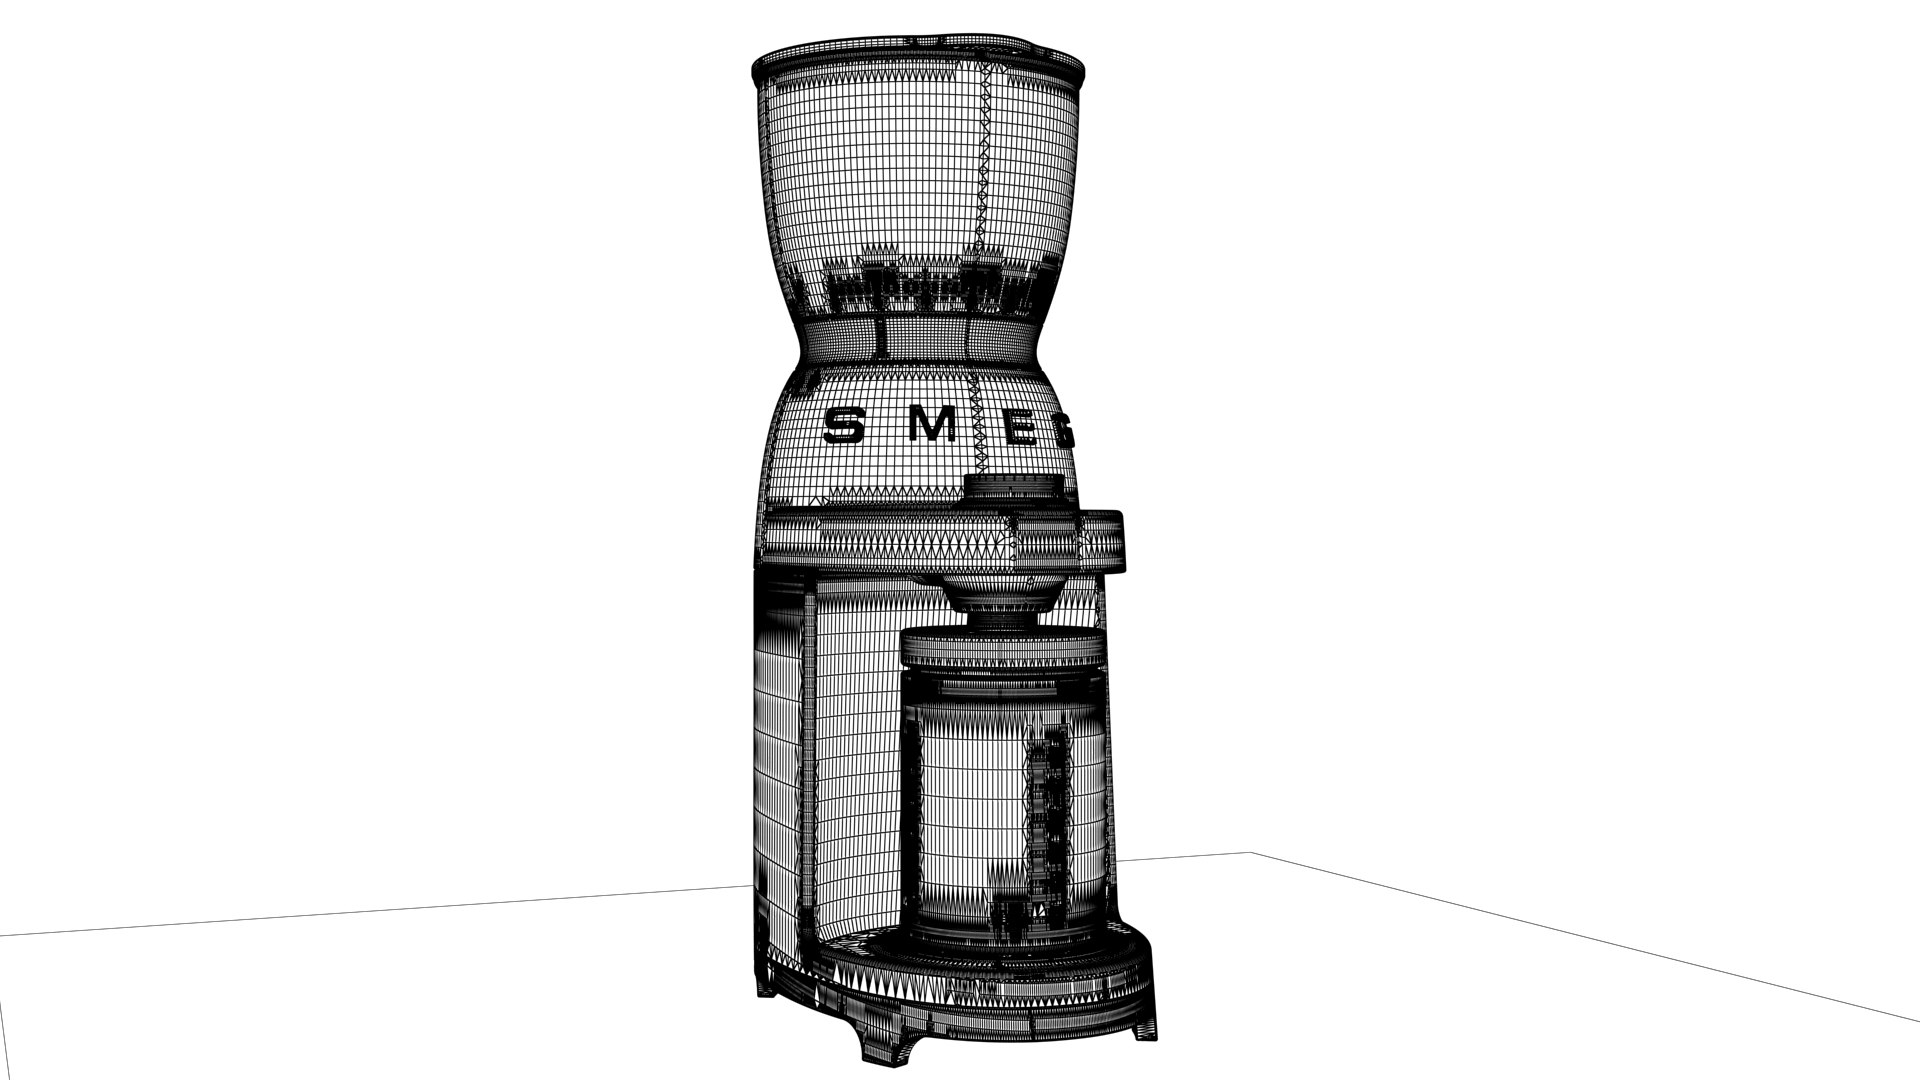 smeg set bmg coffee grinder 3D model